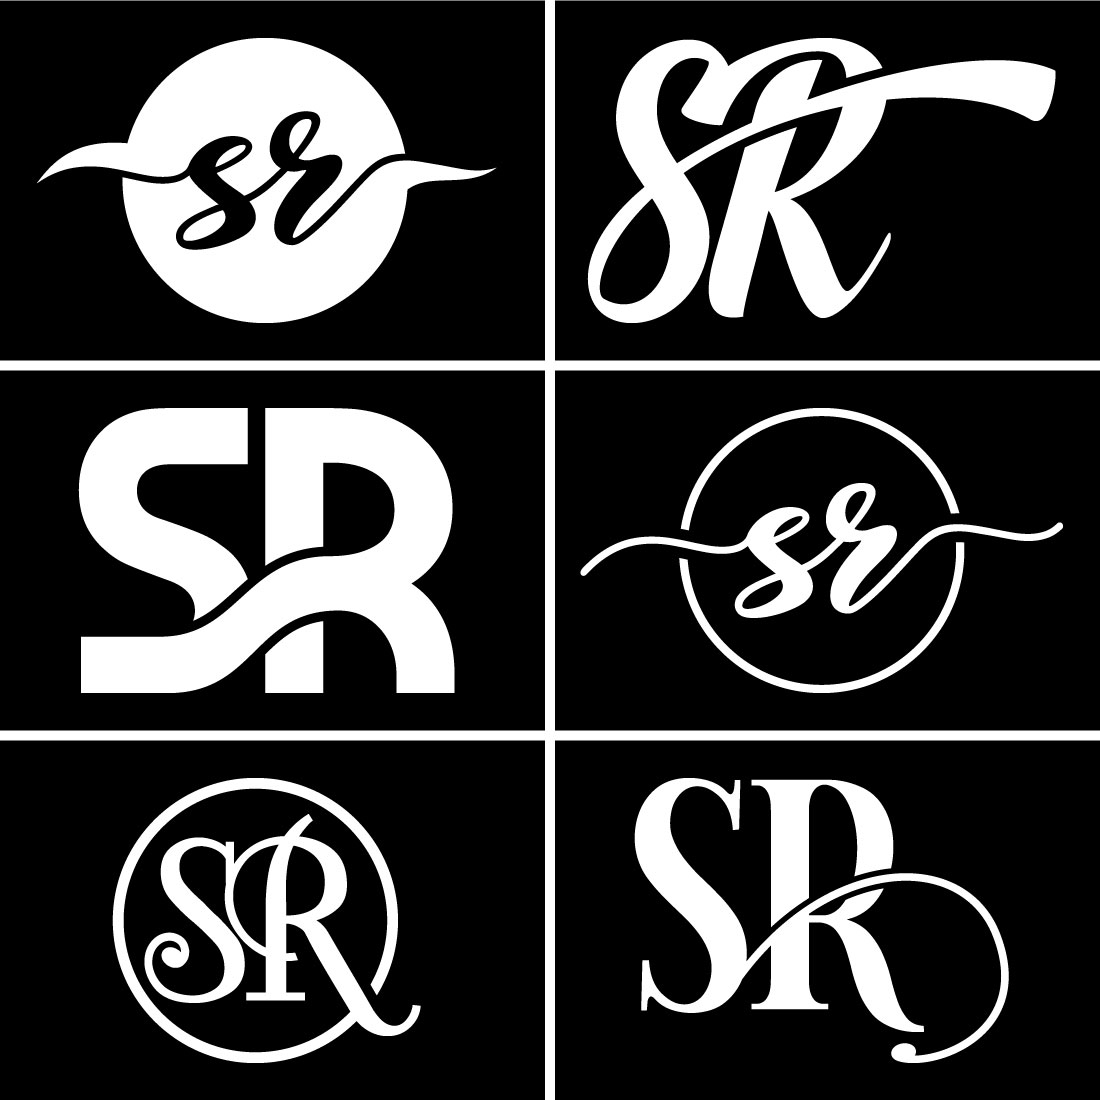 SR letter logo - UpLabs